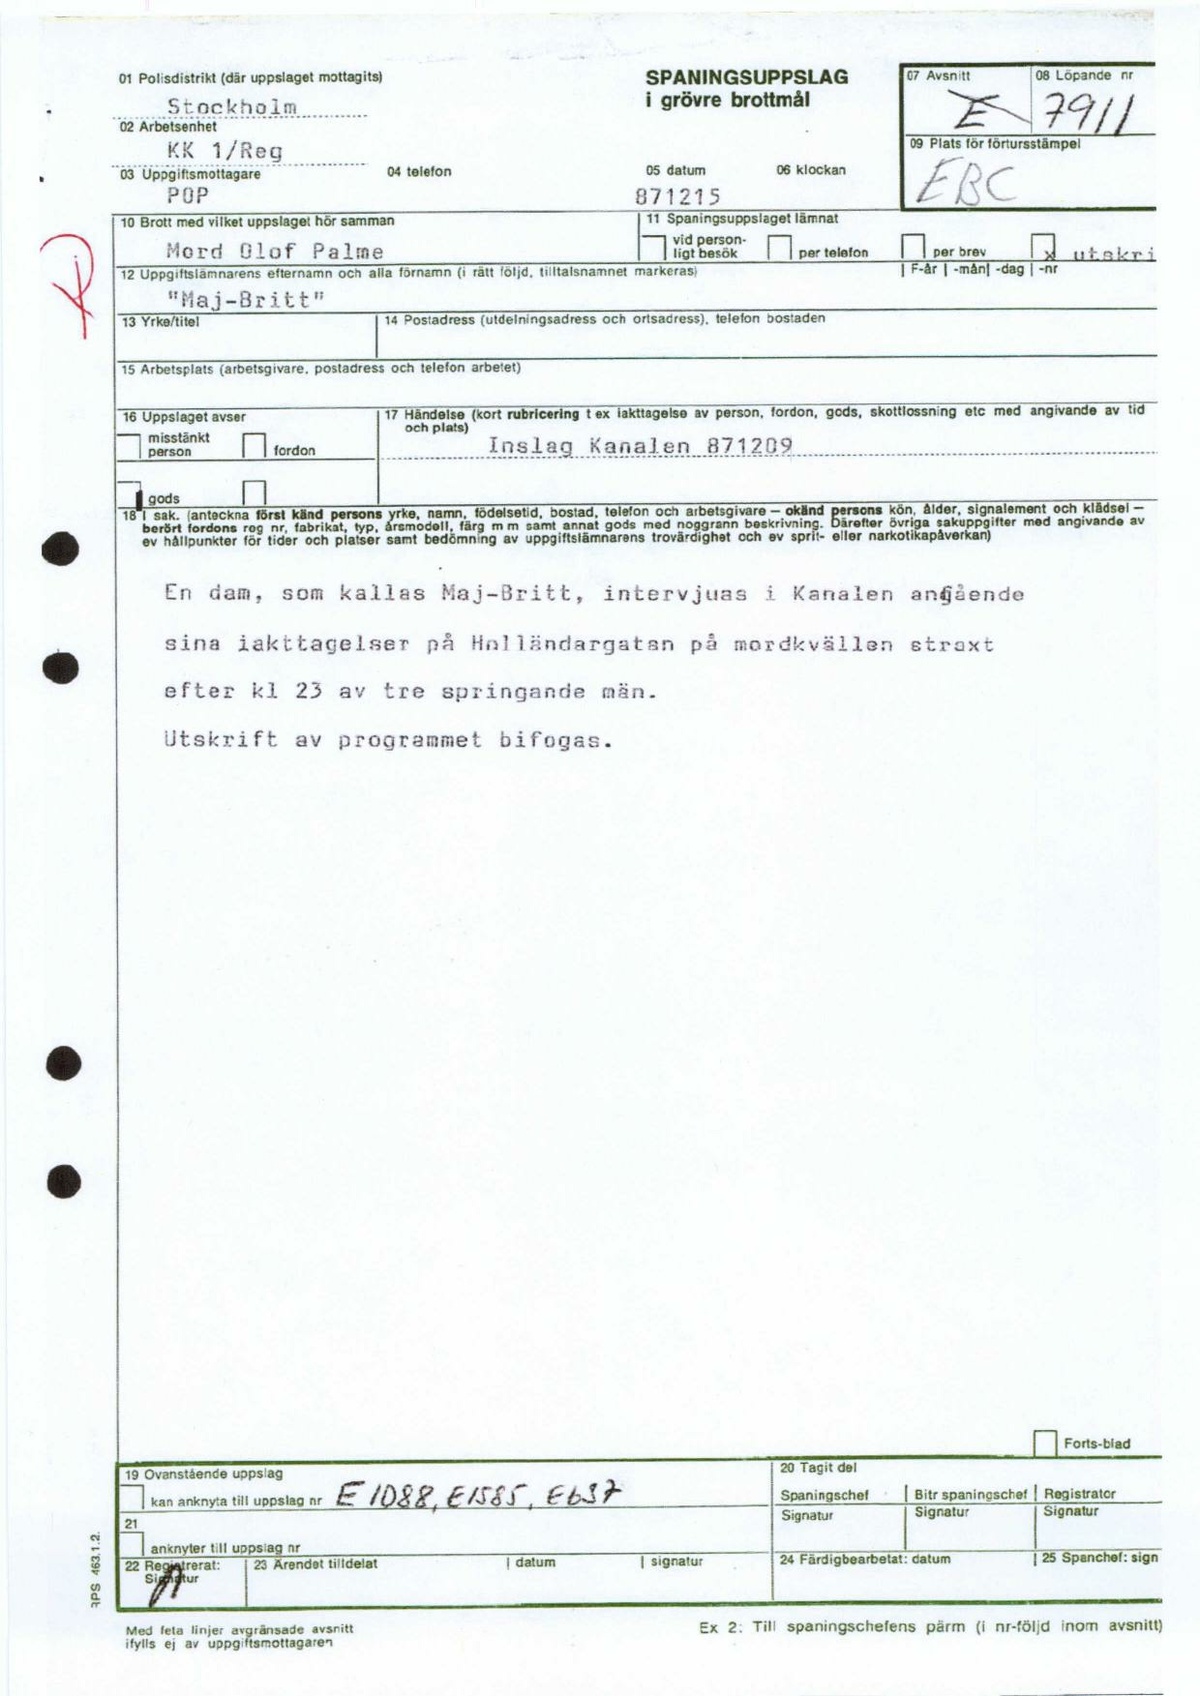 Pol-1987-12-09 EBC7911-00 Kanalen-Maj-Britt-Holländargatan-springande-män.pdf